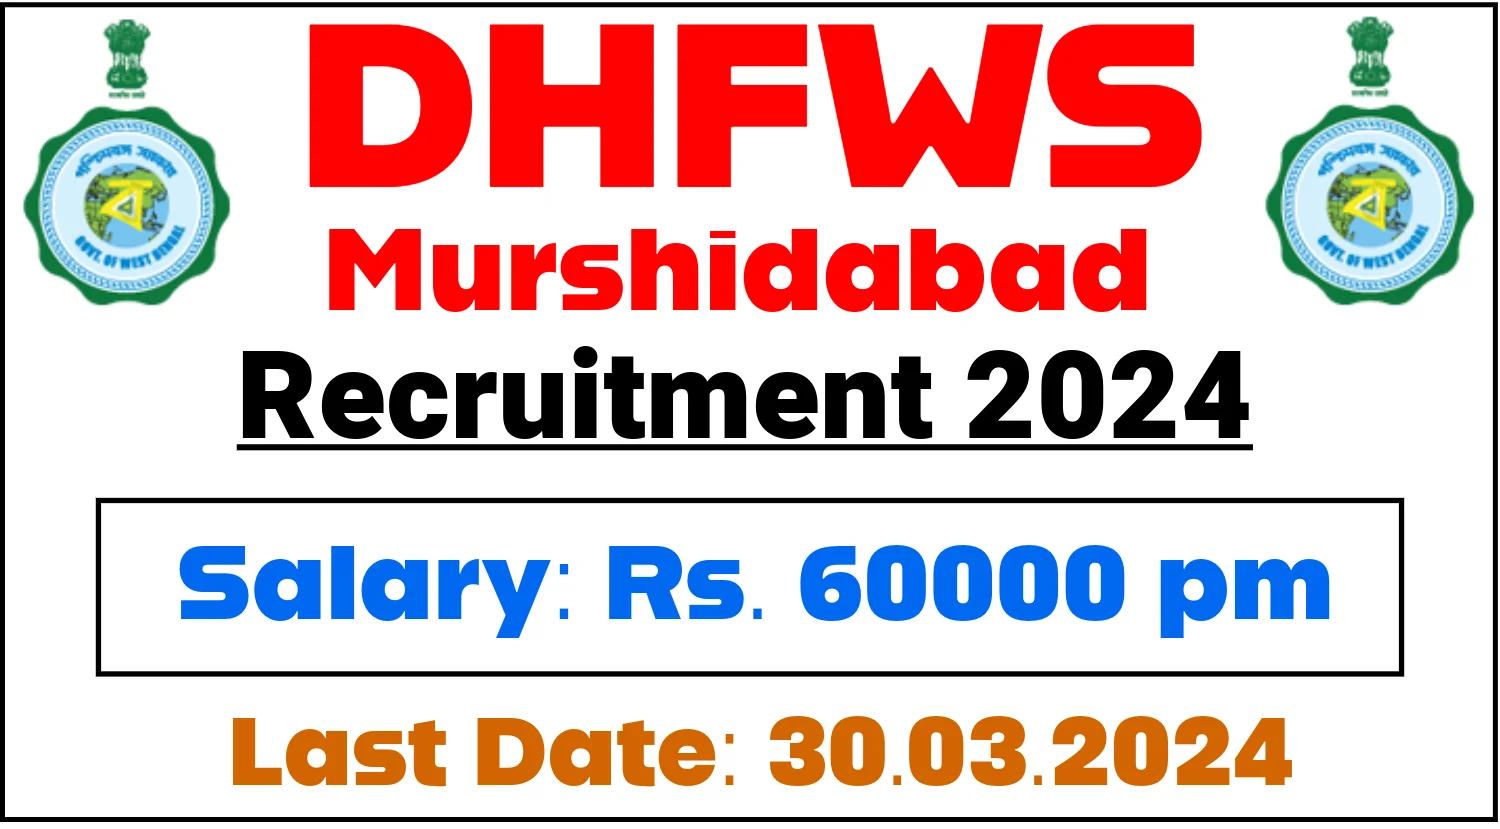 DHFWS Murshidabad Recruitment 2024